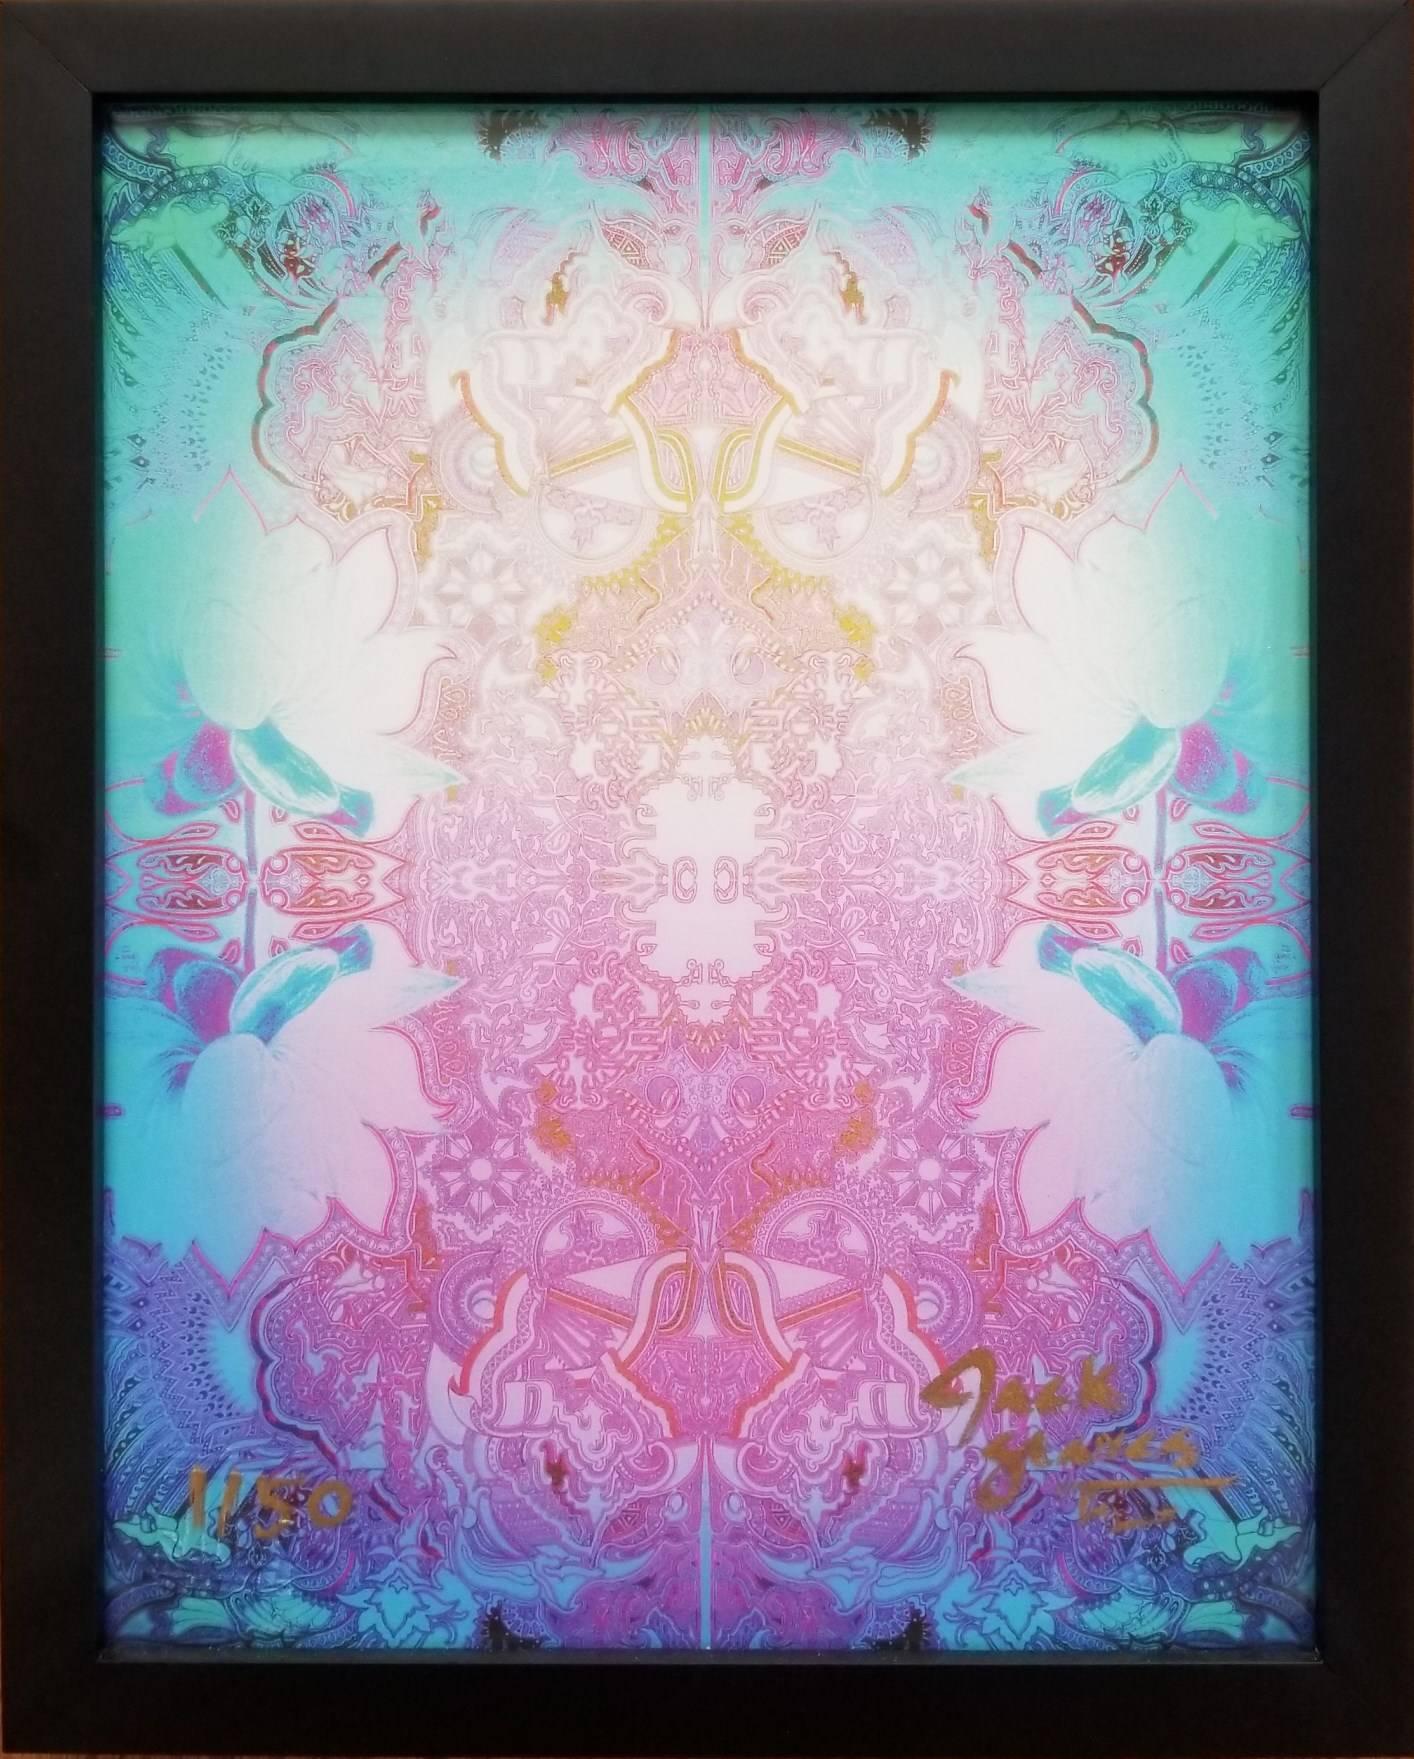 Lotus Flower (Freeze) - Print by Jack Graves III